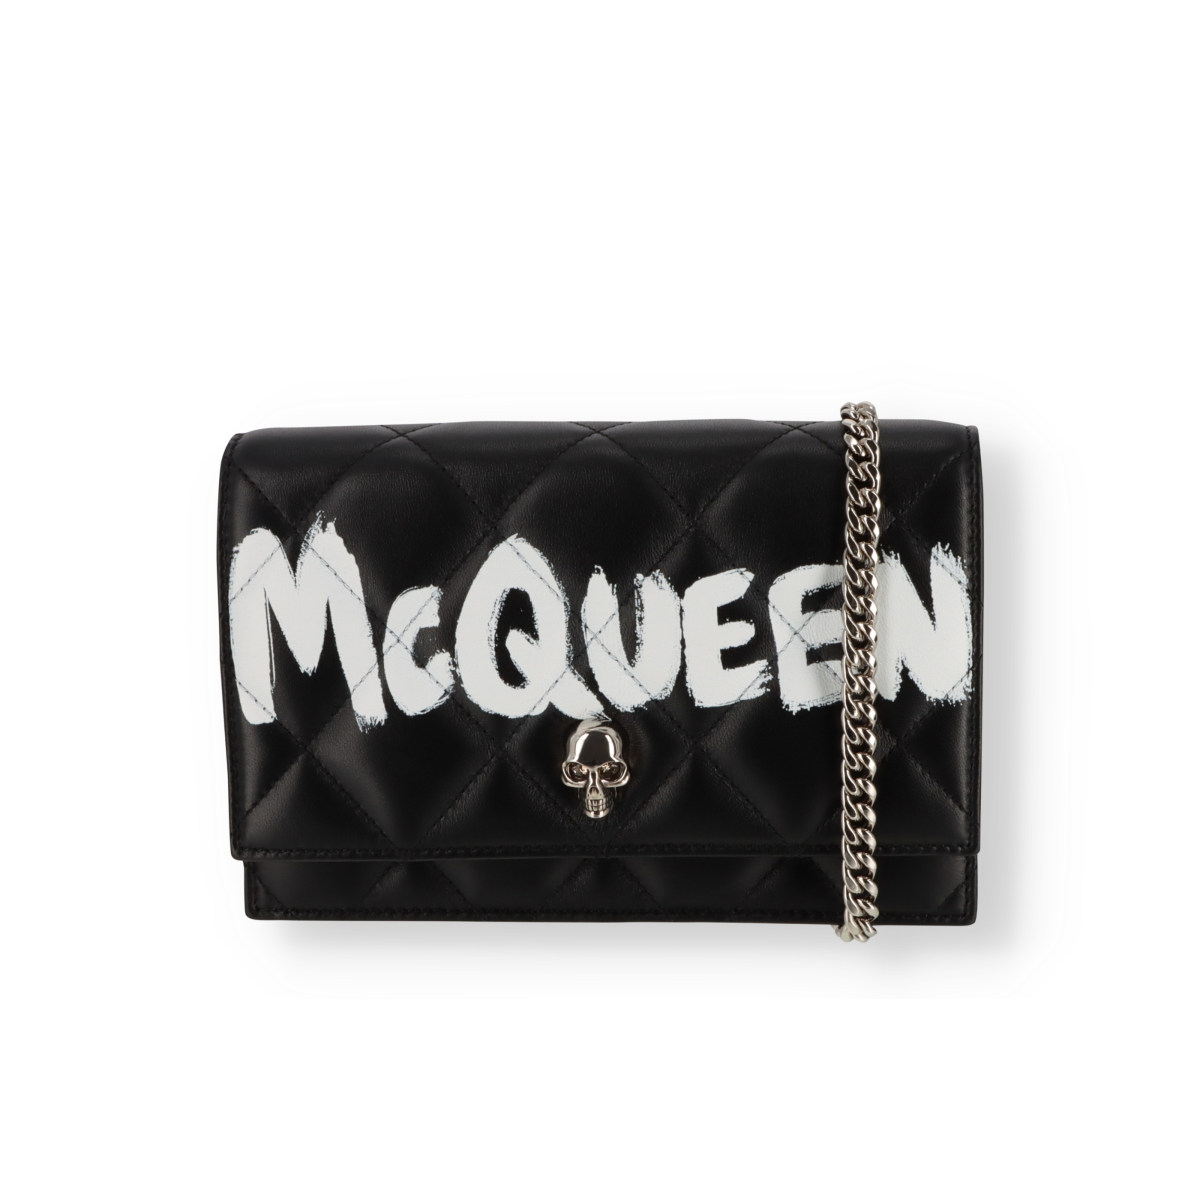 Tasche Alexander McQueen Skull Mini Bag